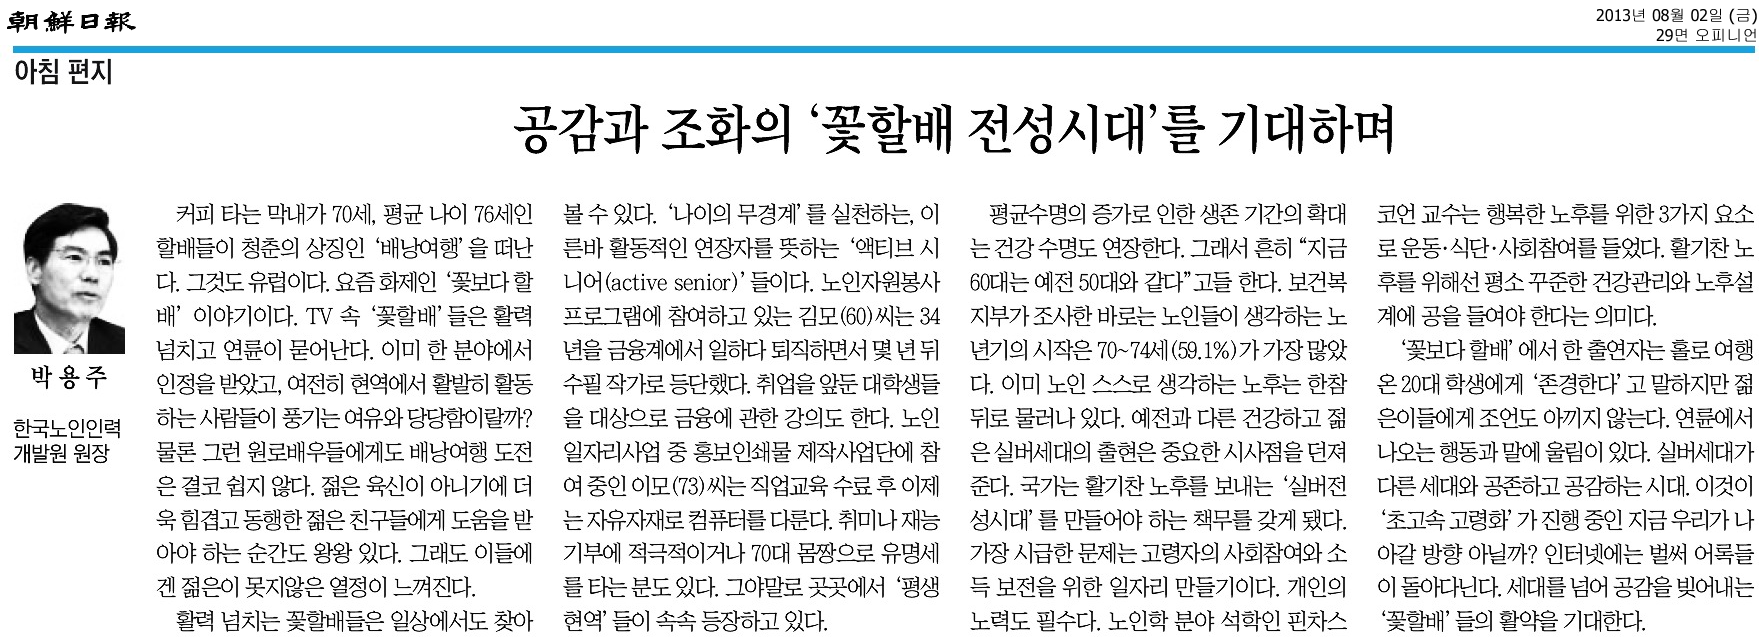 박용주 원장, 조선일보 기고문 게재